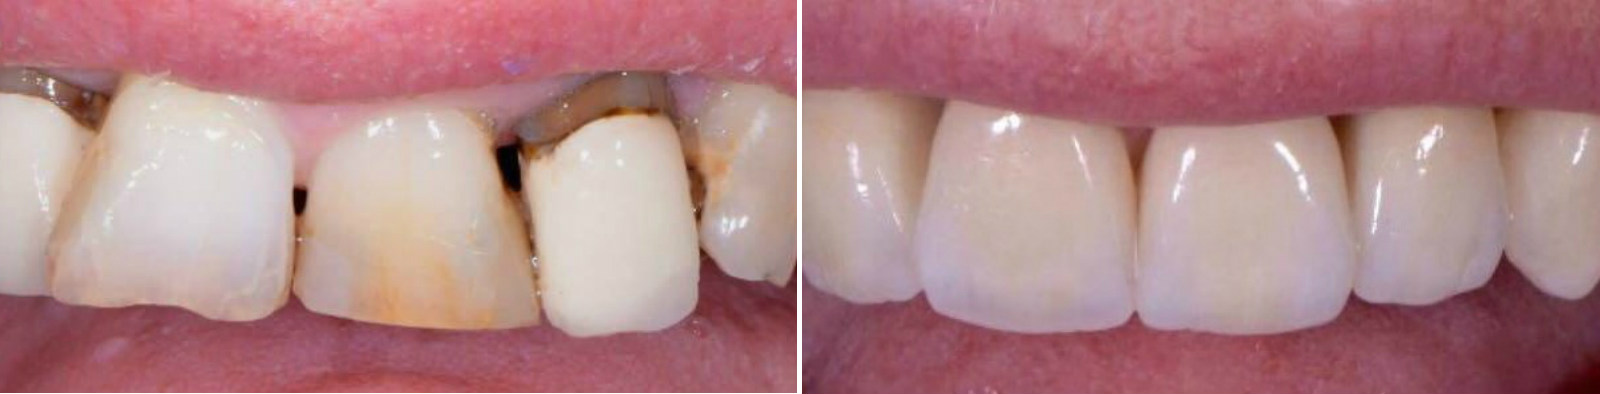 Восстановление зубного ряда коронками и винирами